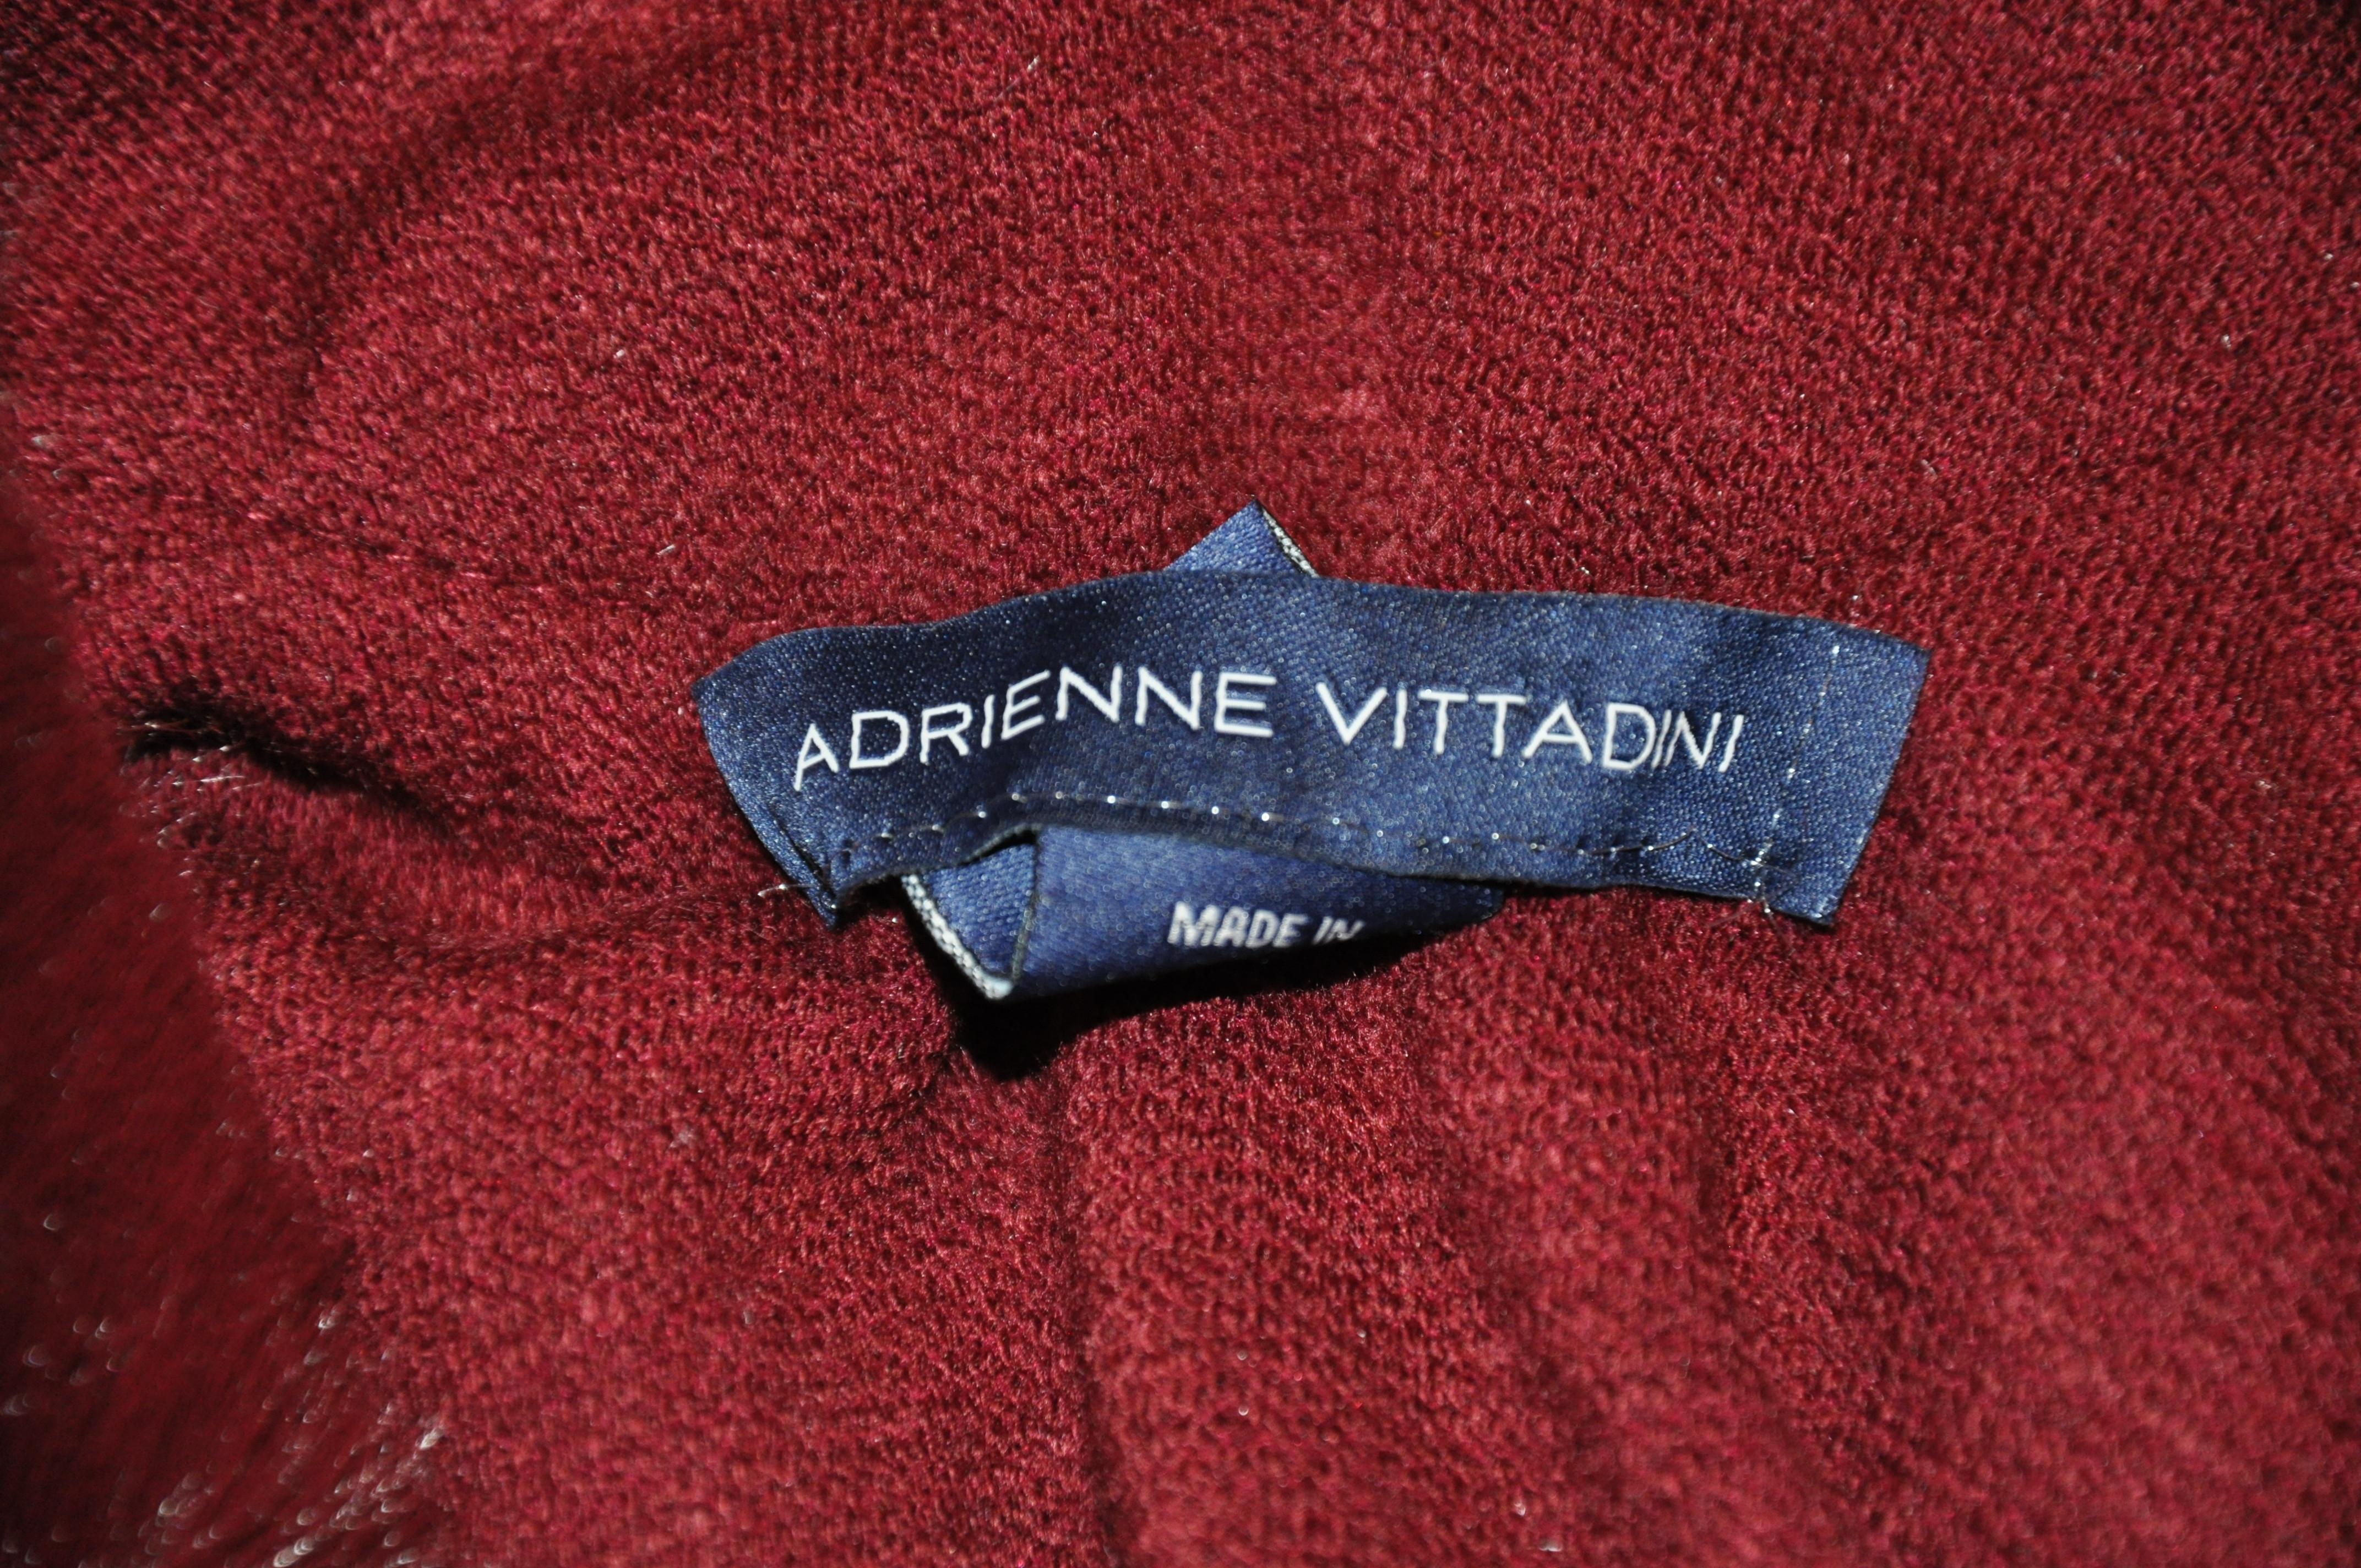     Le luxueux poncho de soirée Adrienne Vittadini, de couleur bordeaux profond, accentué de fausse fourrure, mesure 33 cm de longueur totale. La largeur totale en travers mesure 42 pouces. Le devant a une fermeture cachée 